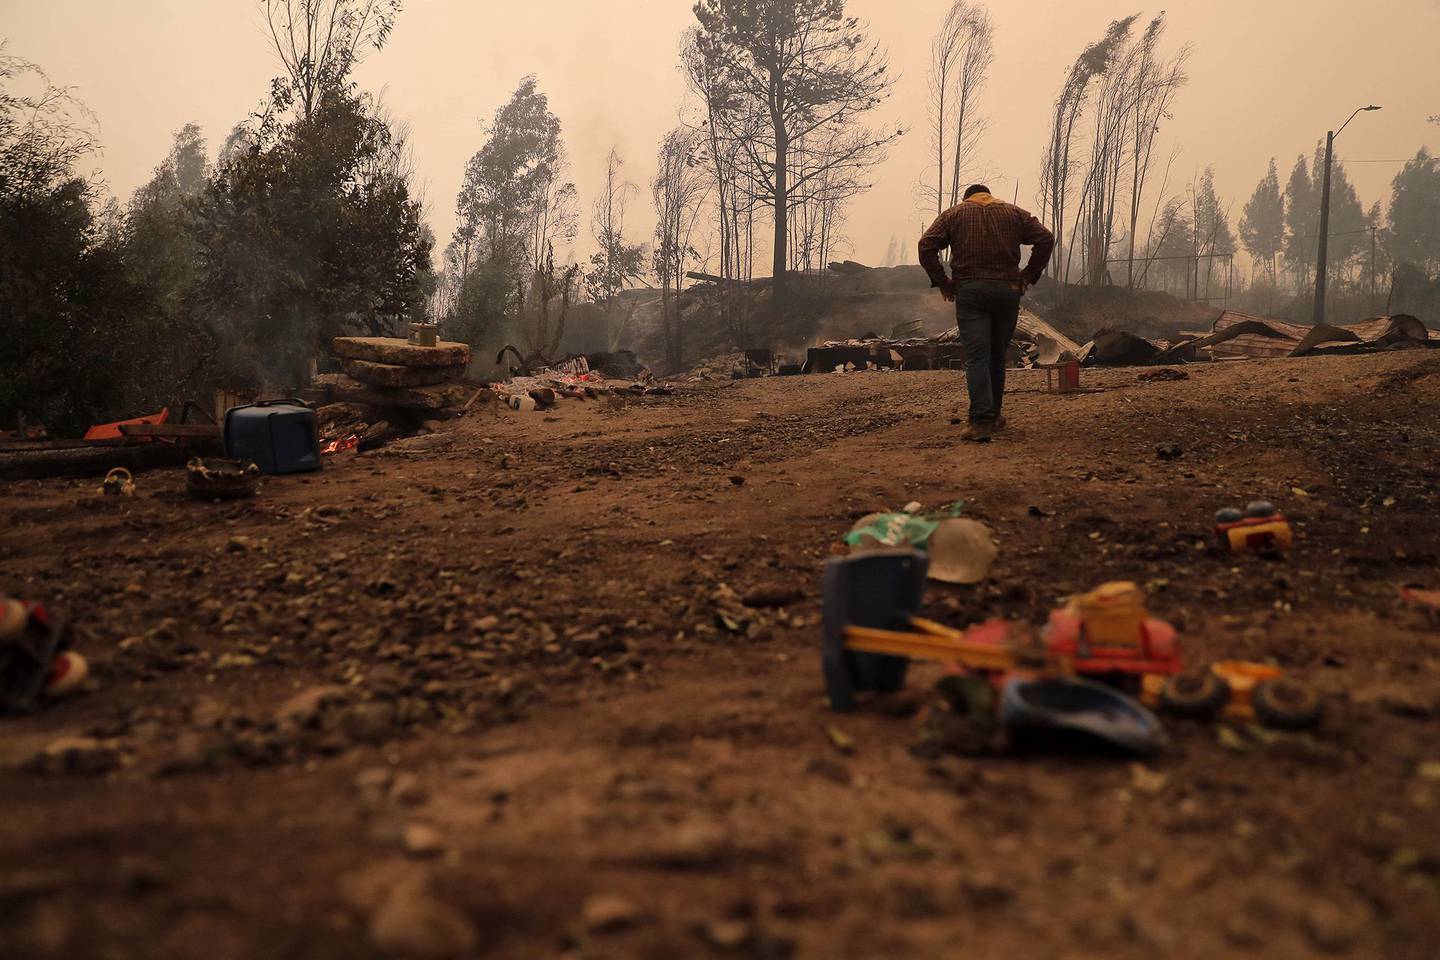 Un residente examina los daños luego de un incendio forestal en Santa Juana, provincia de Concepción, Chile, el 3 de febrero. Fotógrafo: Javier Torres/AFP/Getty Imagesdfd